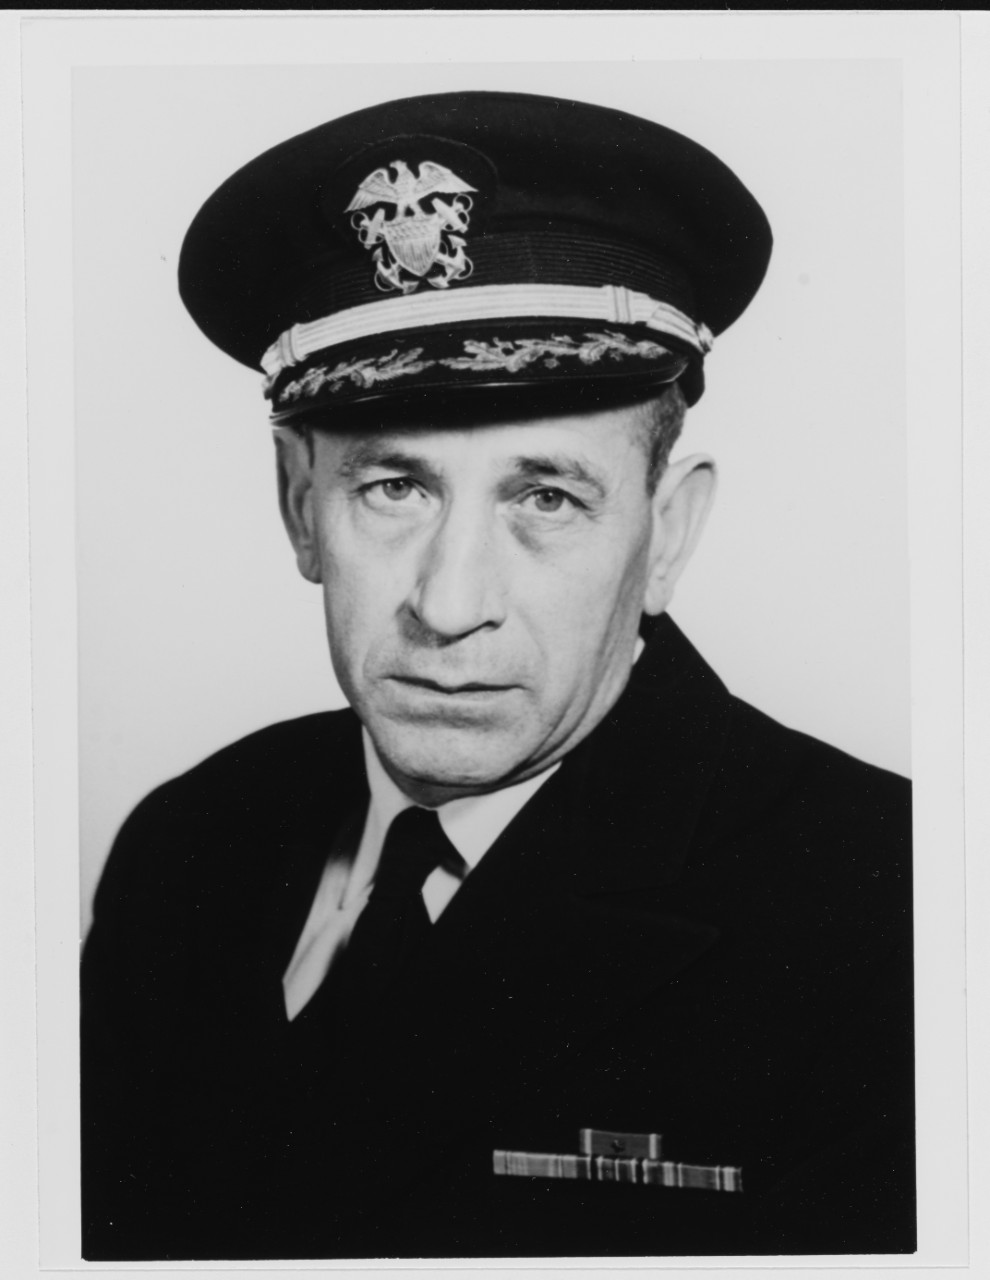 Captain William Turek, USNR